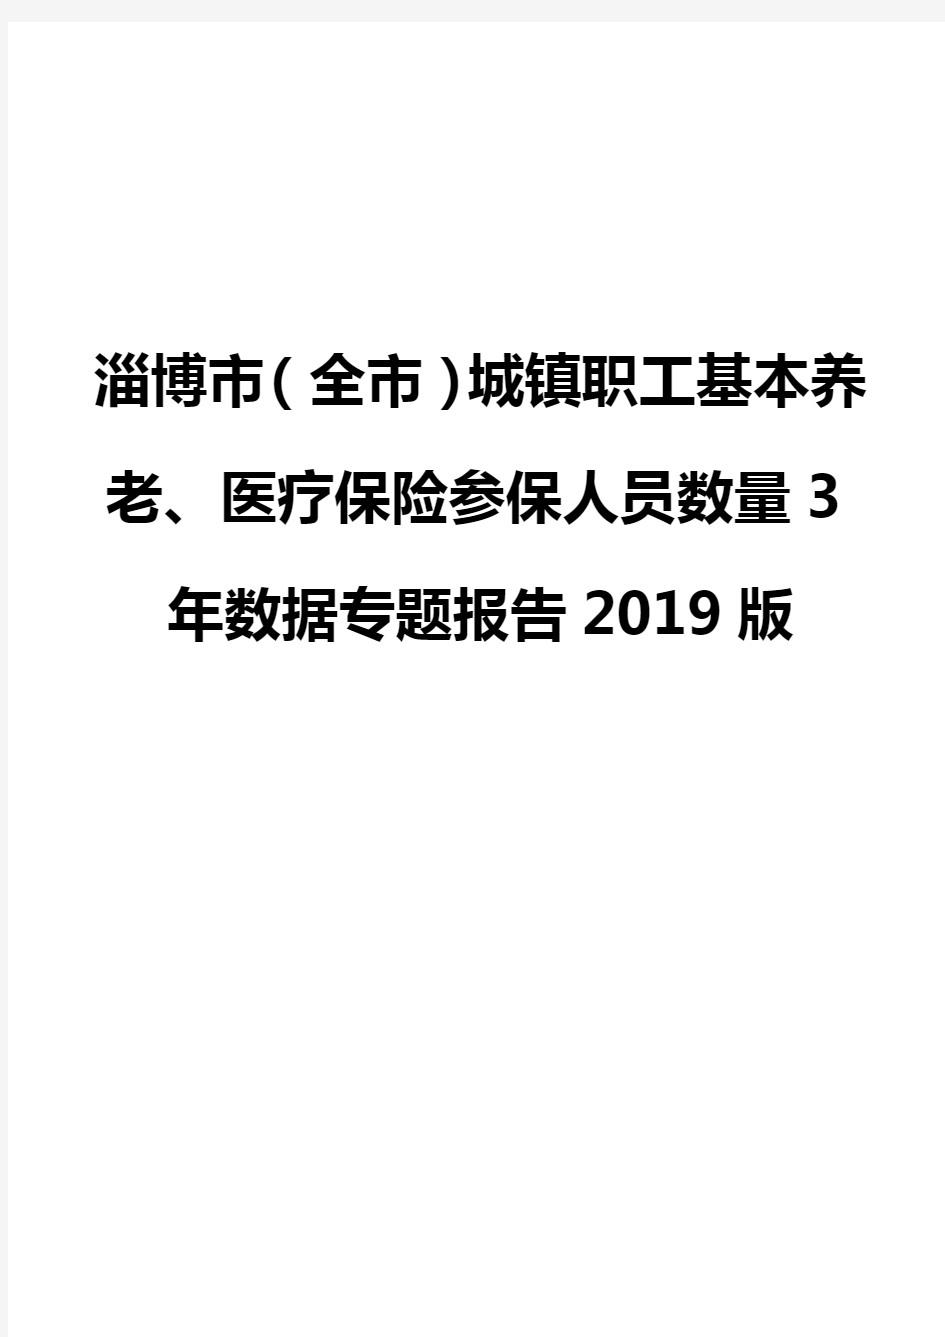 淄博市(全市)城镇职工基本养老、医疗保险参保人员数量3年数据专题报告2019版